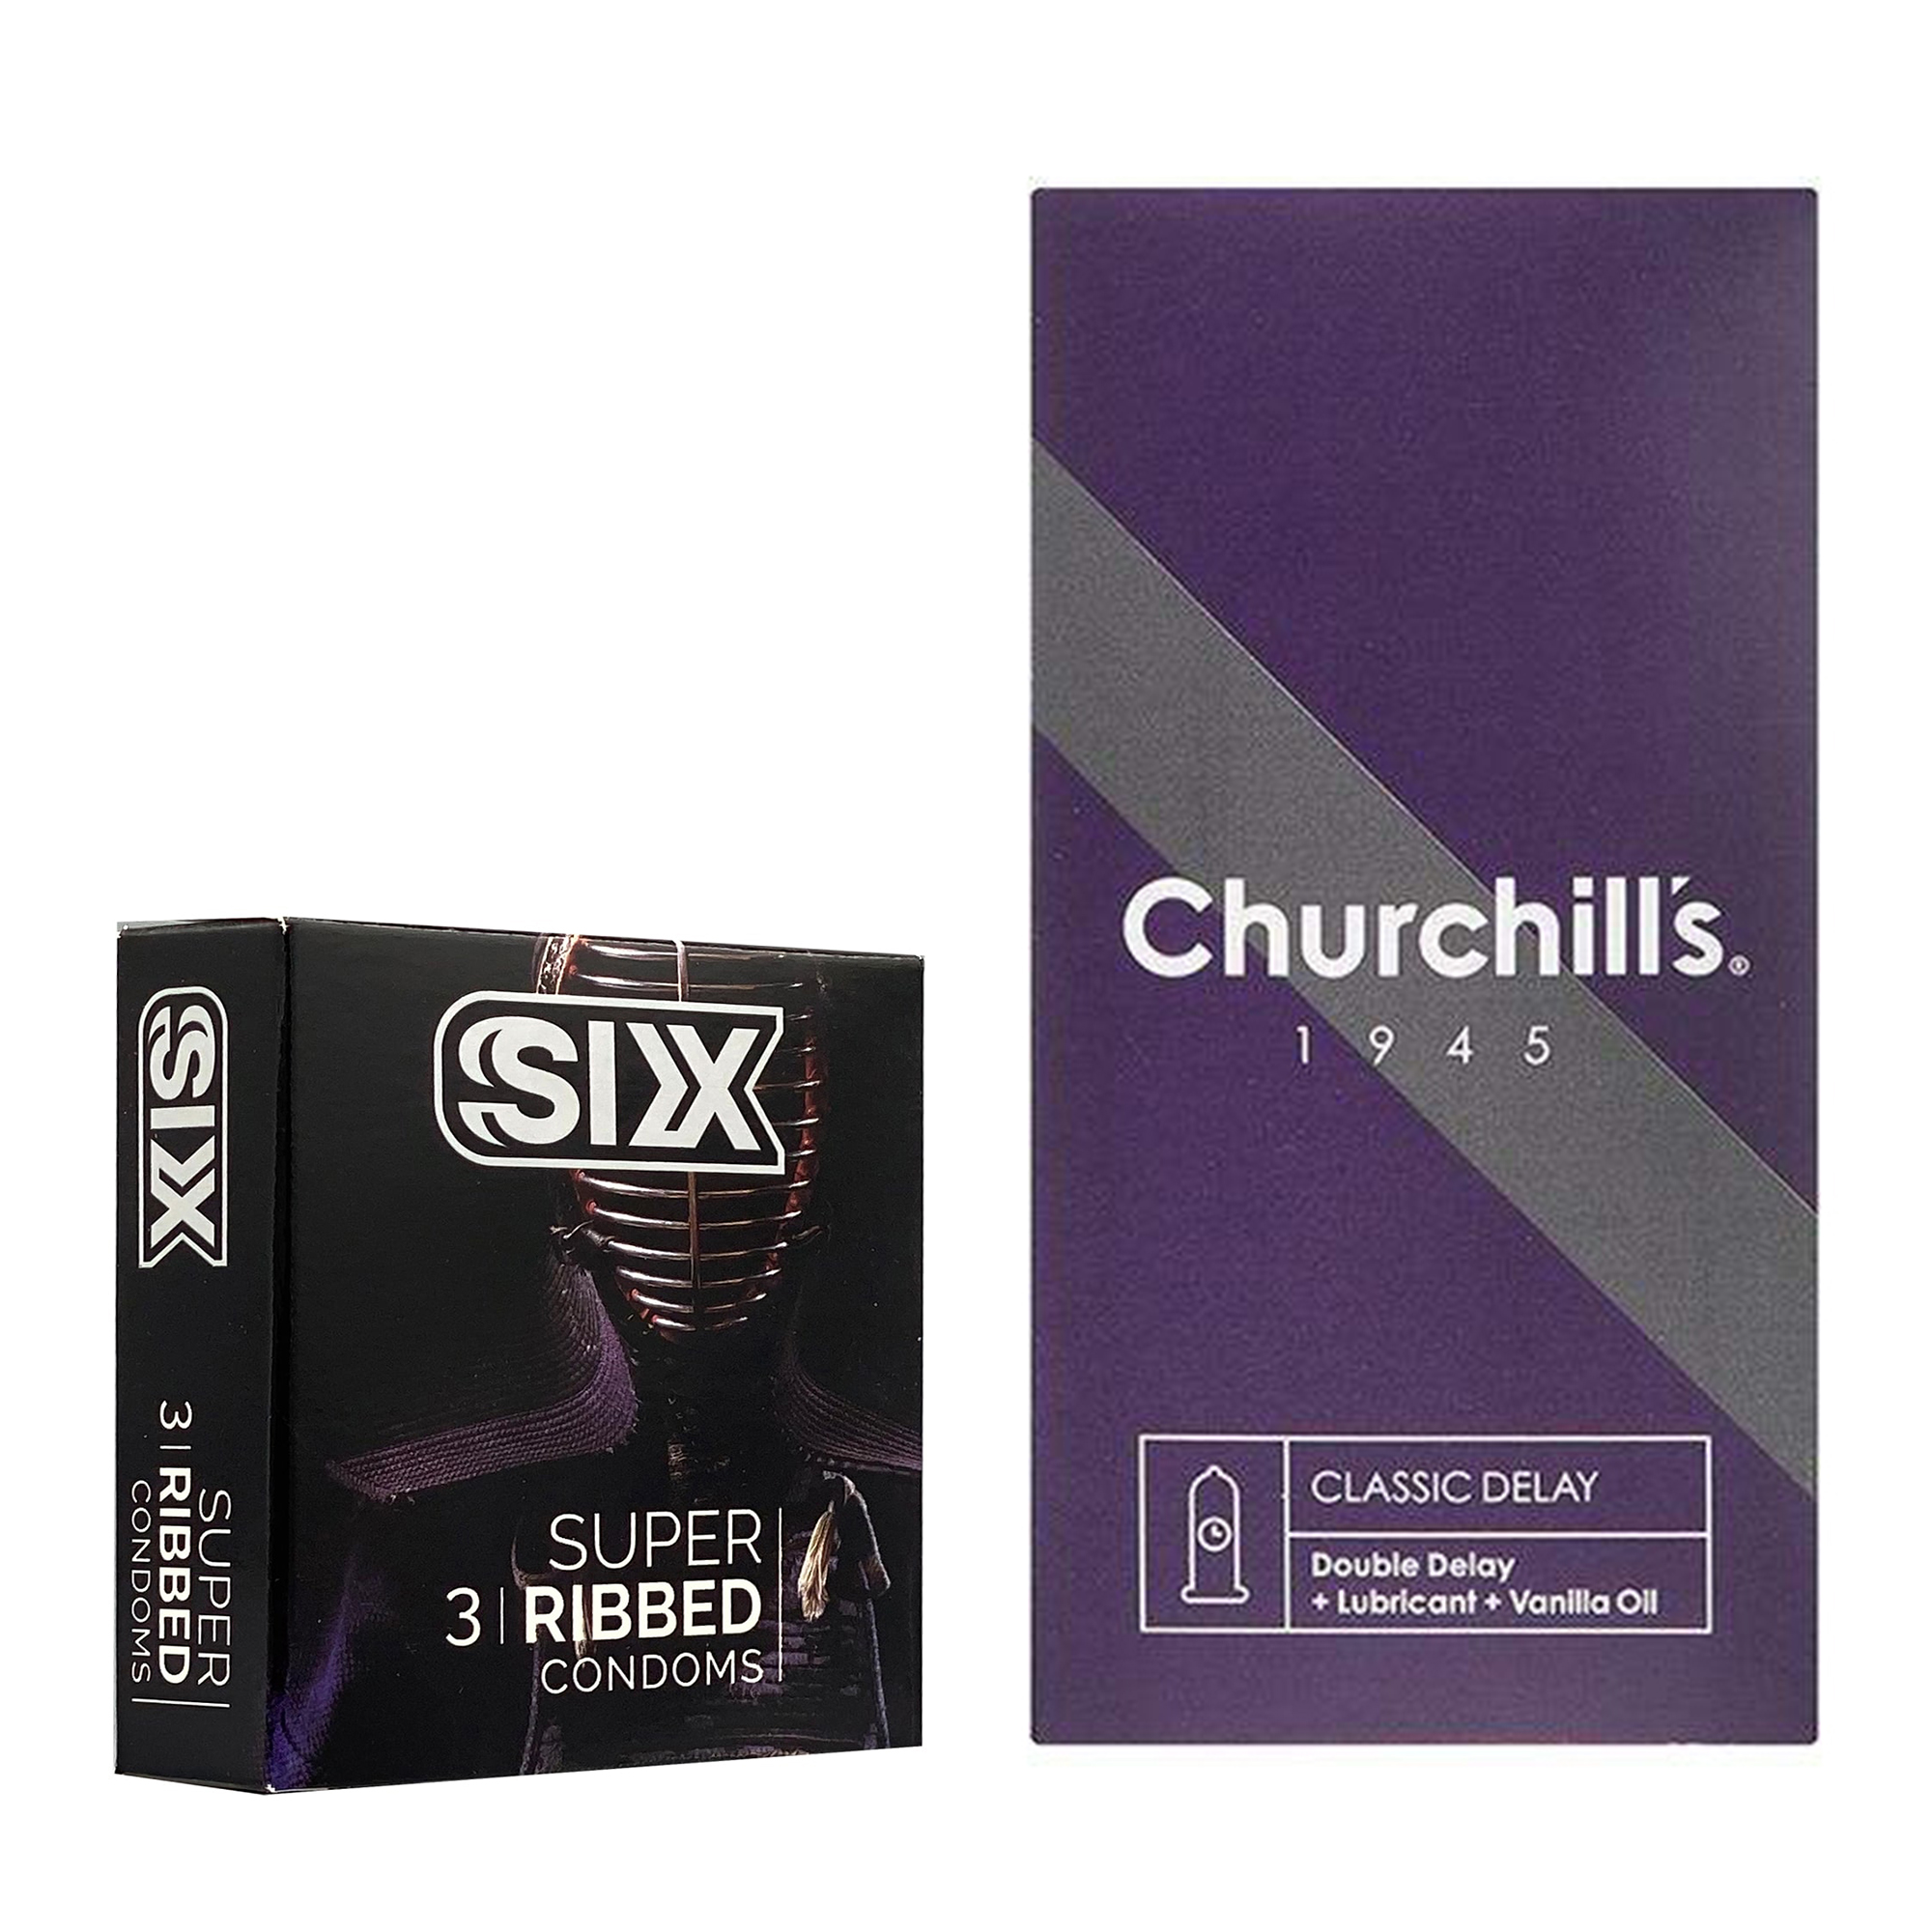 کاندوم چرچیلز مدل Classic Delay بسته 12 عددی به همراه کاندوم سیکس مدل شیاردار بسته 3 عددی 